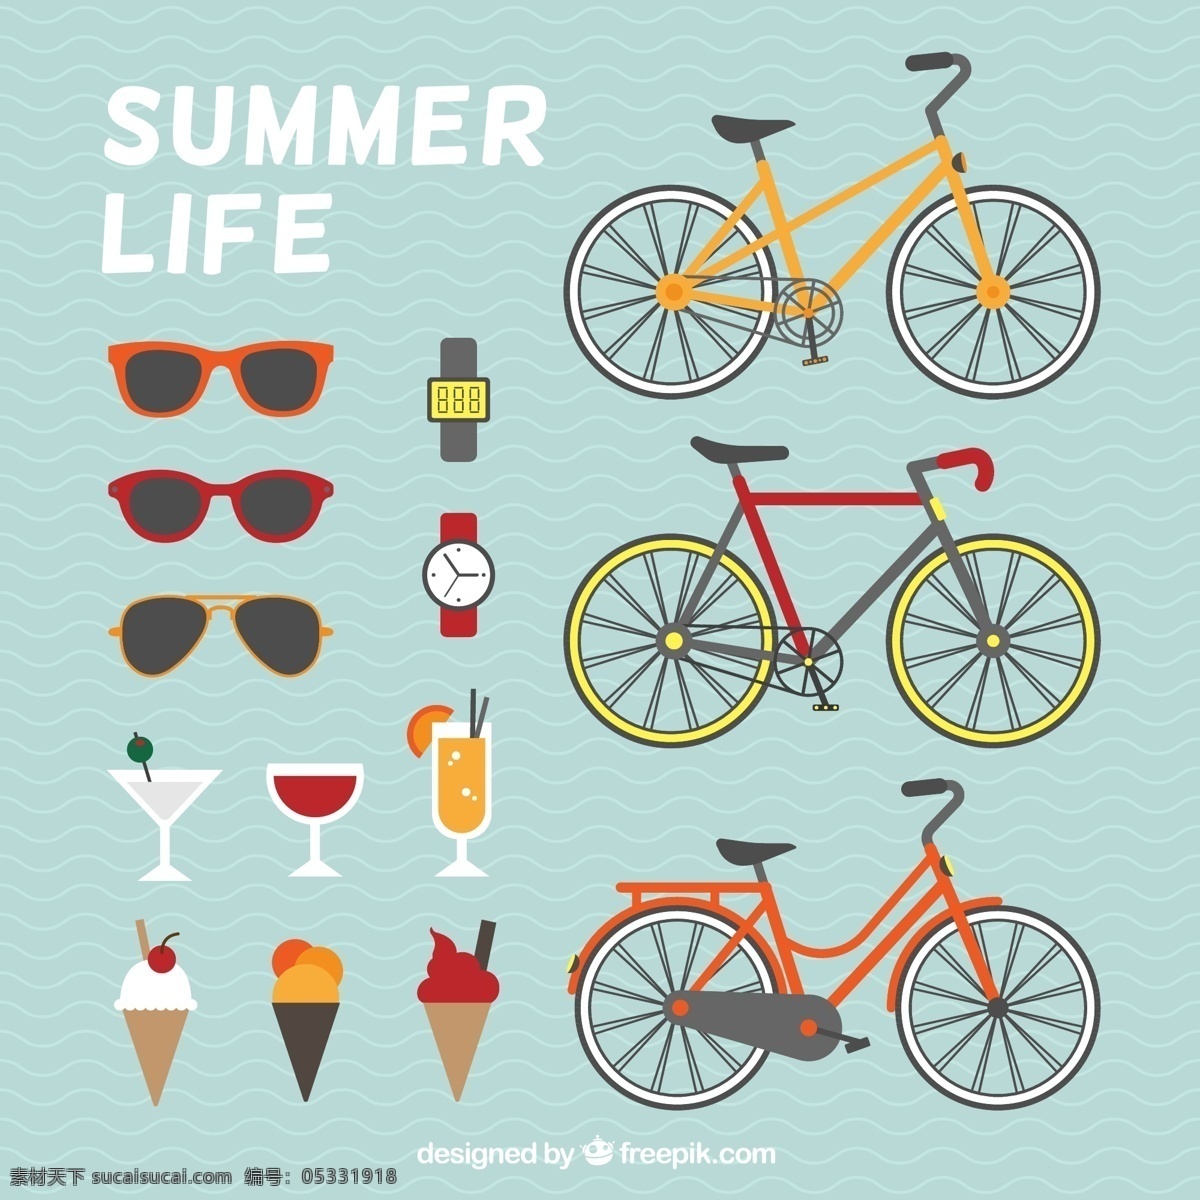 暑假生活 元素矢量 单车 手表 鸡尾酒 太阳眼镜 夏季 暑假 冰淇淋 自行车 矢量图 ai格式 生活百科 生活用品 白色